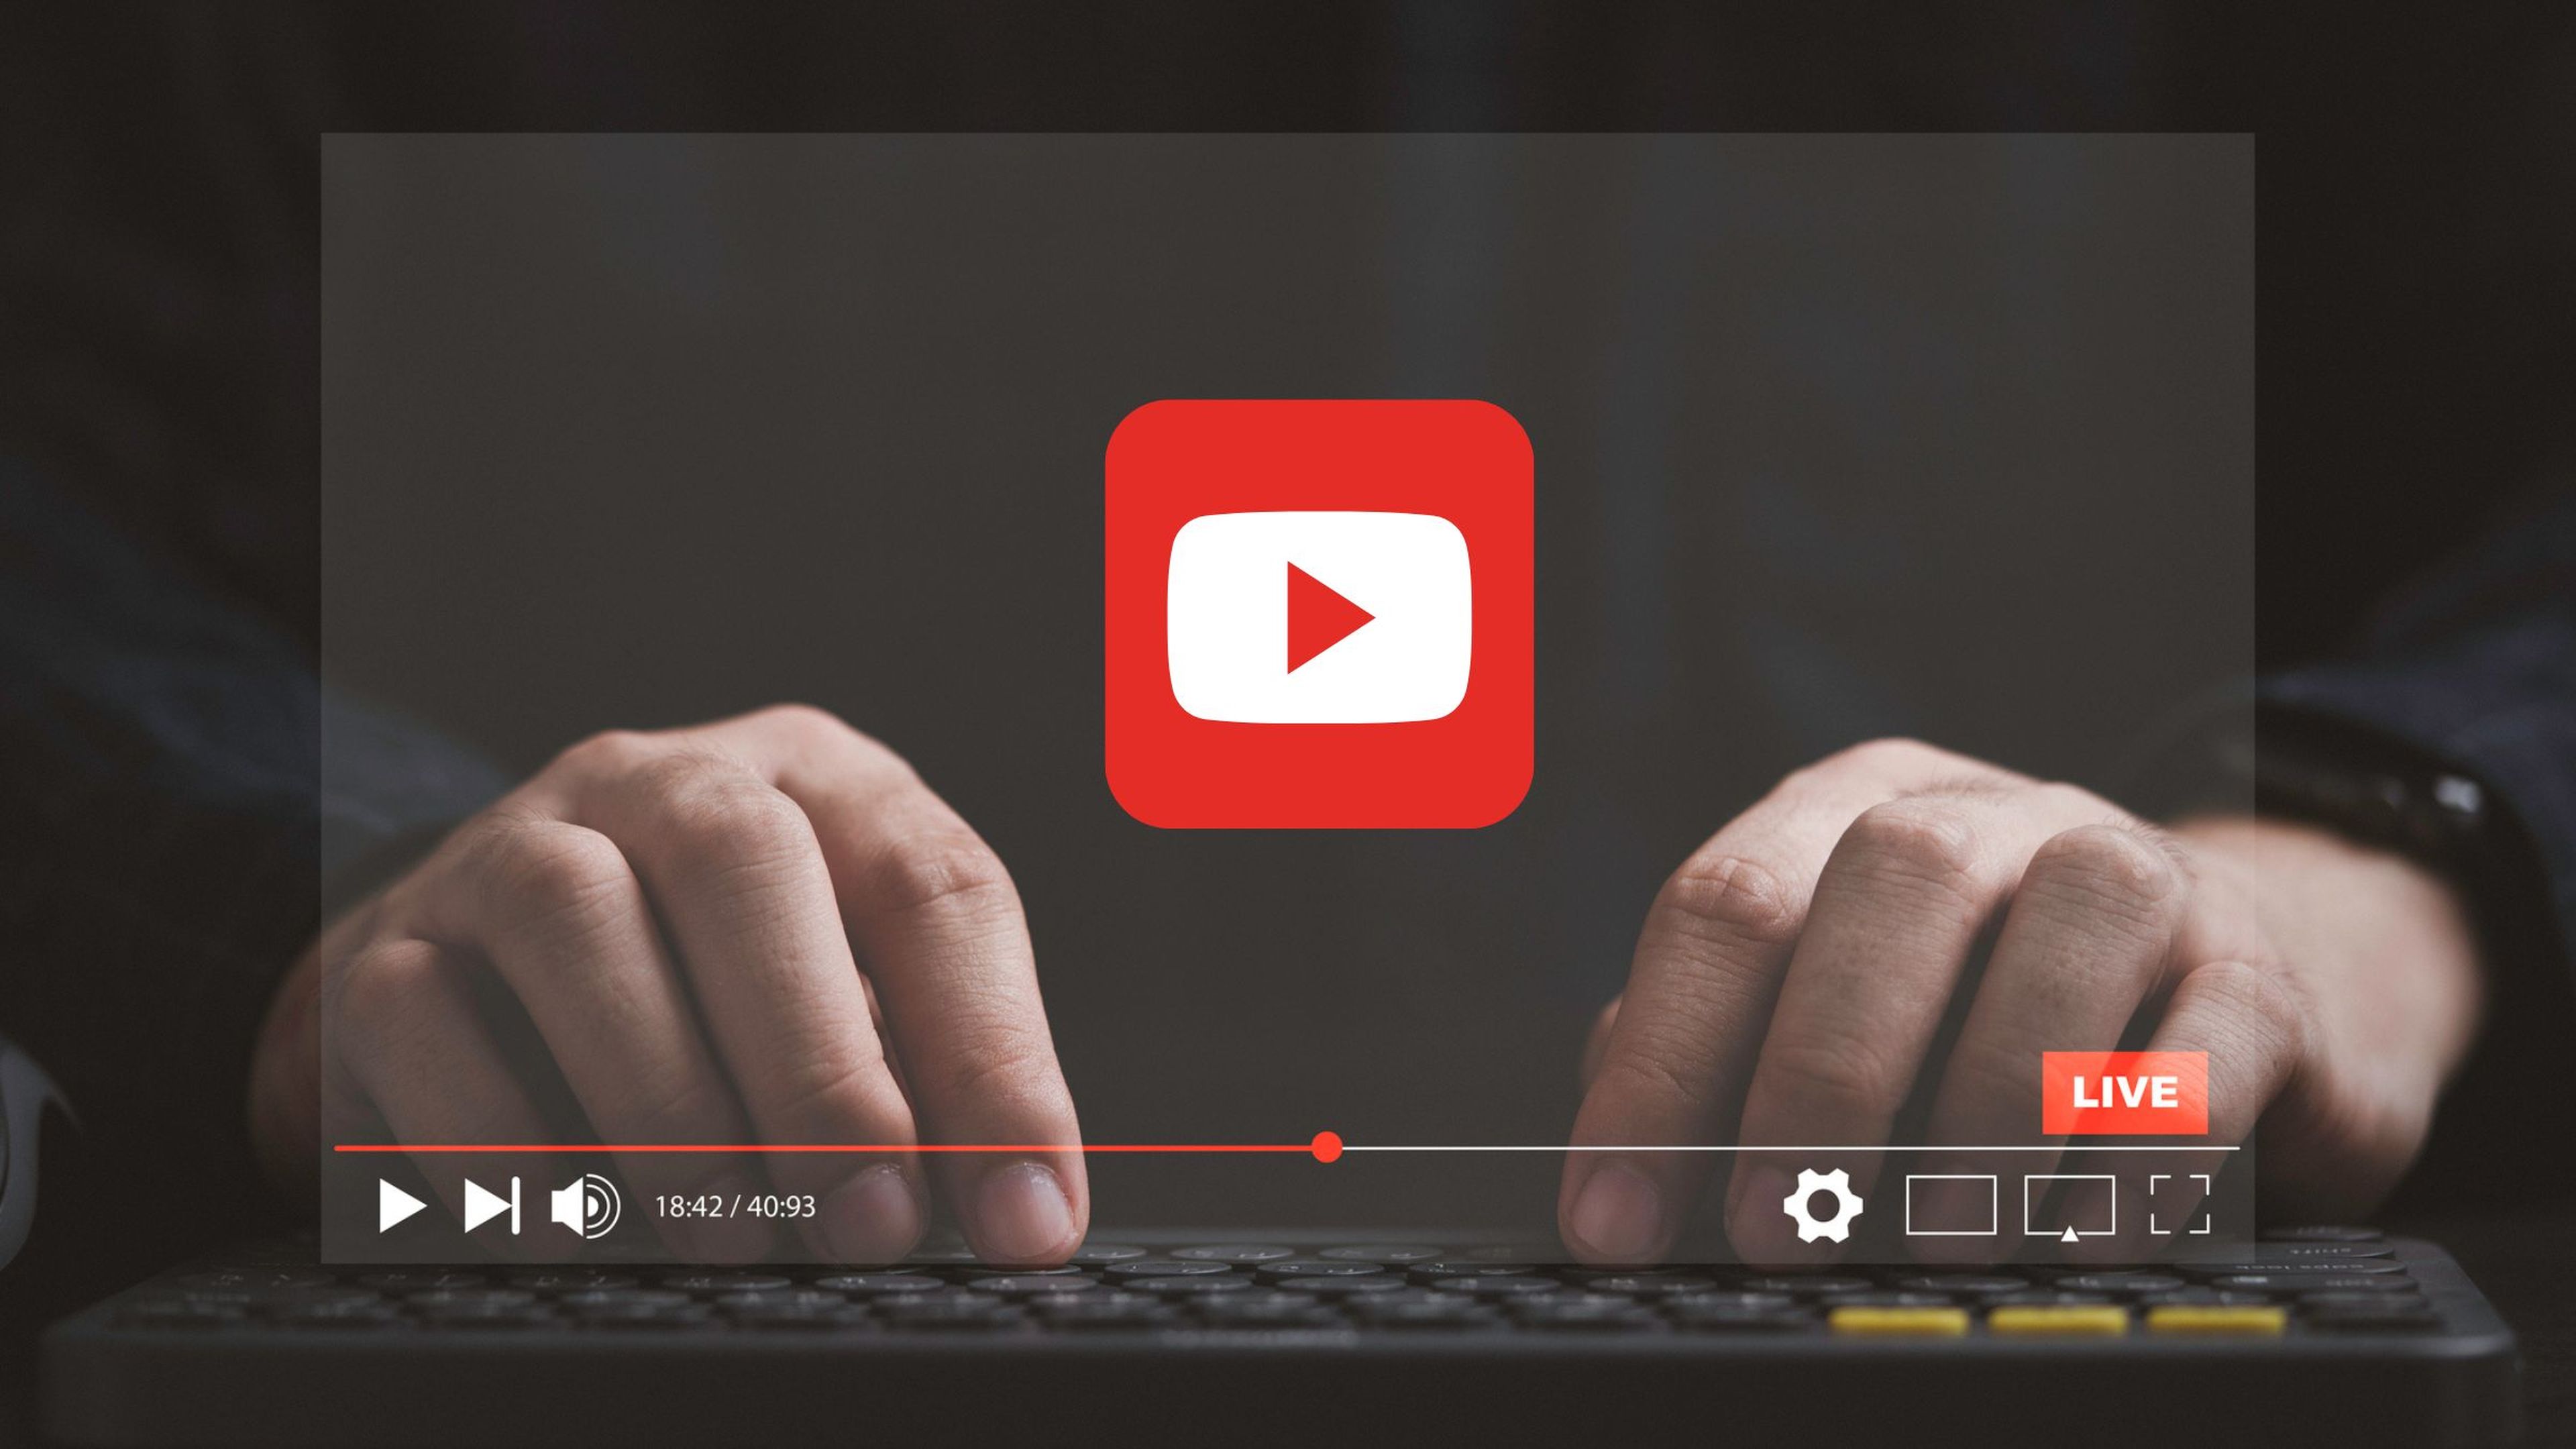 Adiós bloqueadores: YouTube ha encontrado la forma de obligarte a ver todos sus anuncios